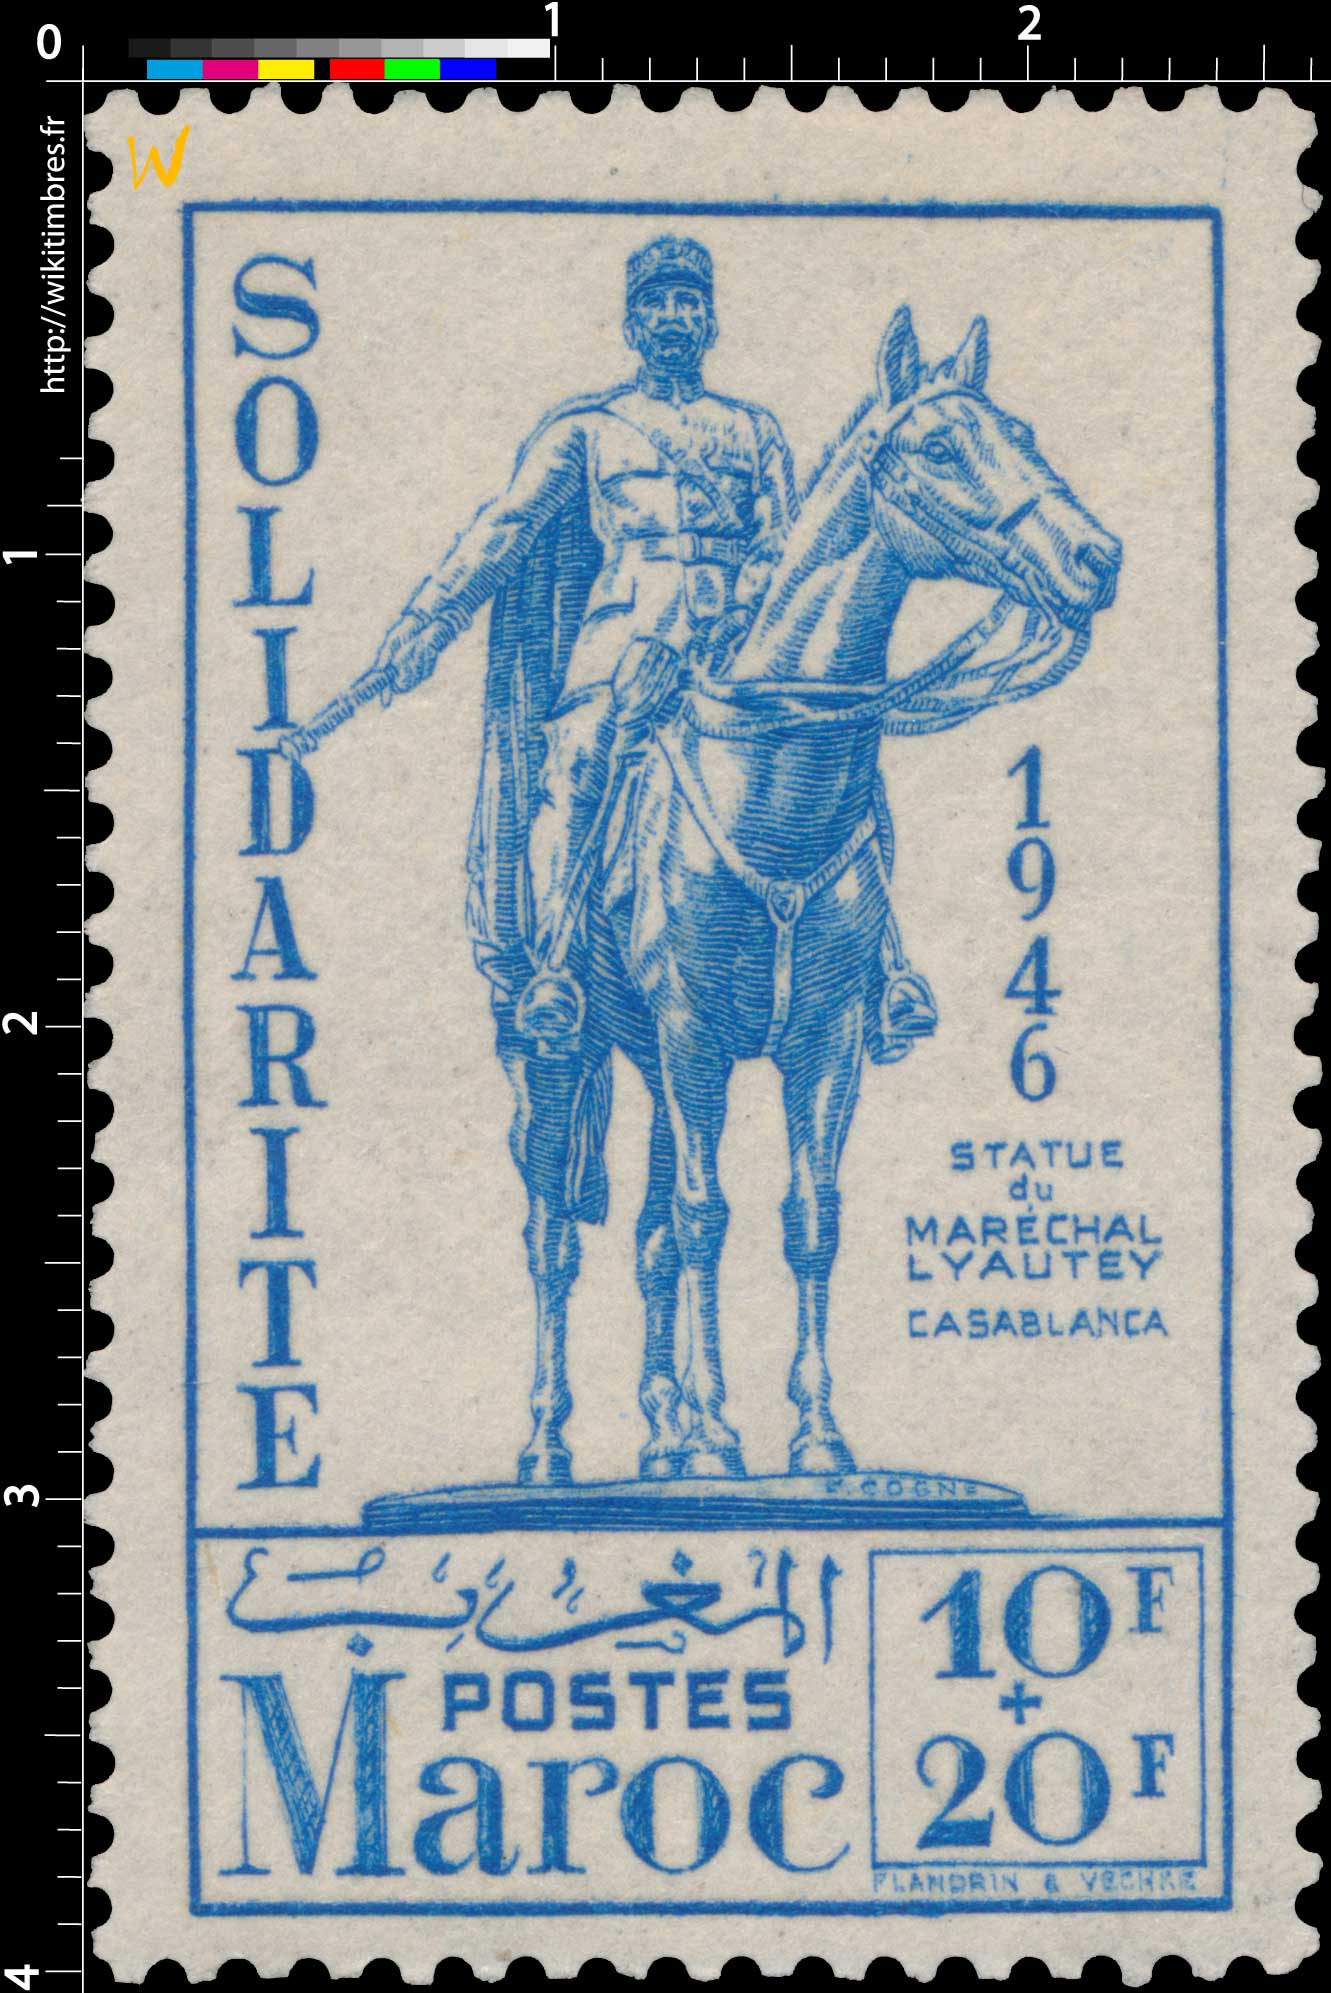 1946 Maroc - Statue équestre de Lyautey - Casablanca